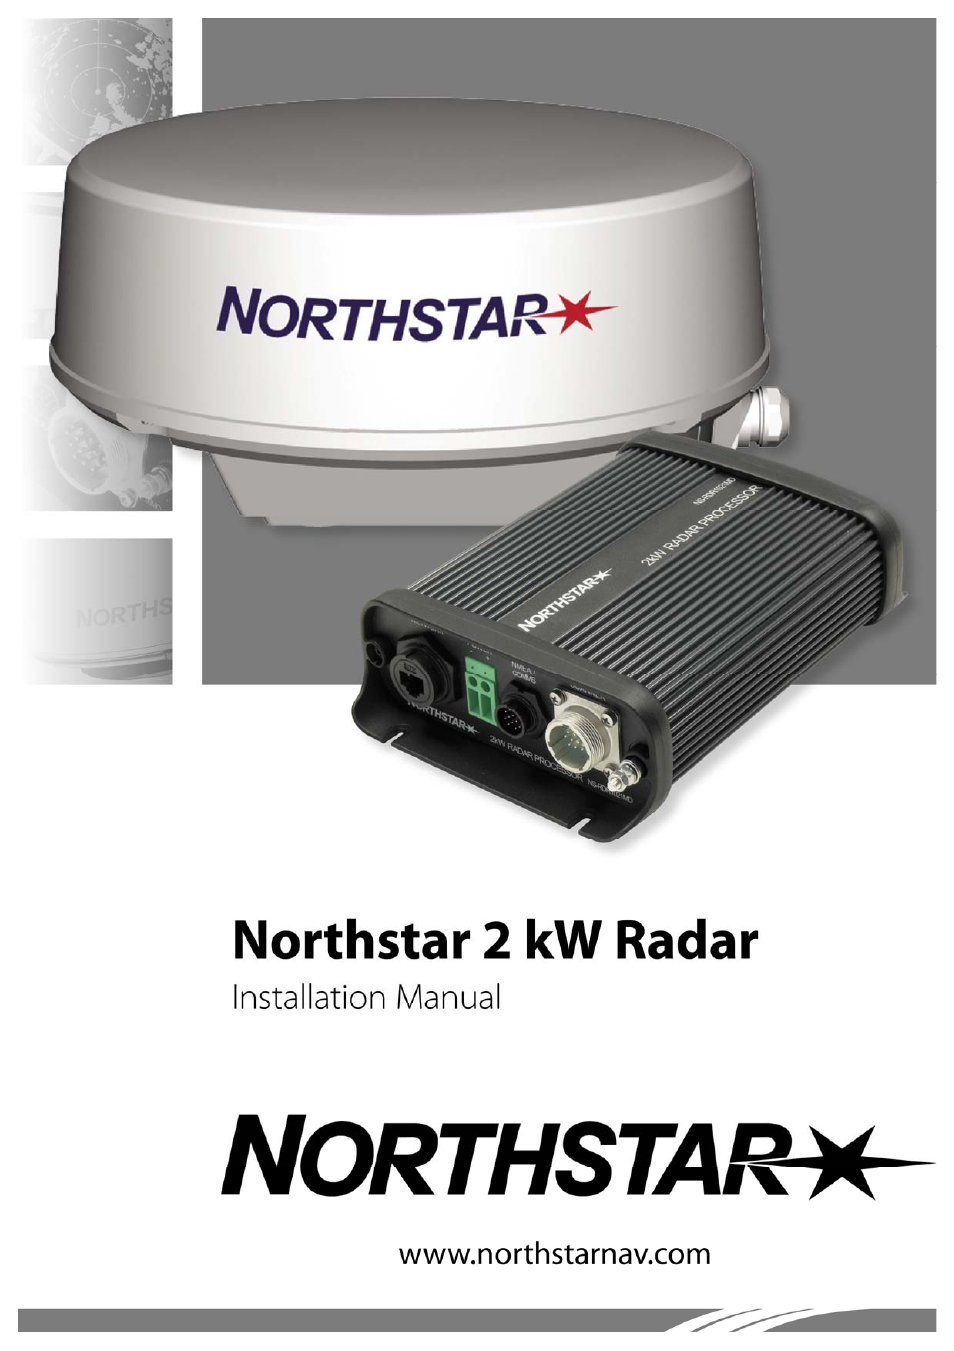 NorthStar Navigation Northstar 2 kW User Manual | 52 pages